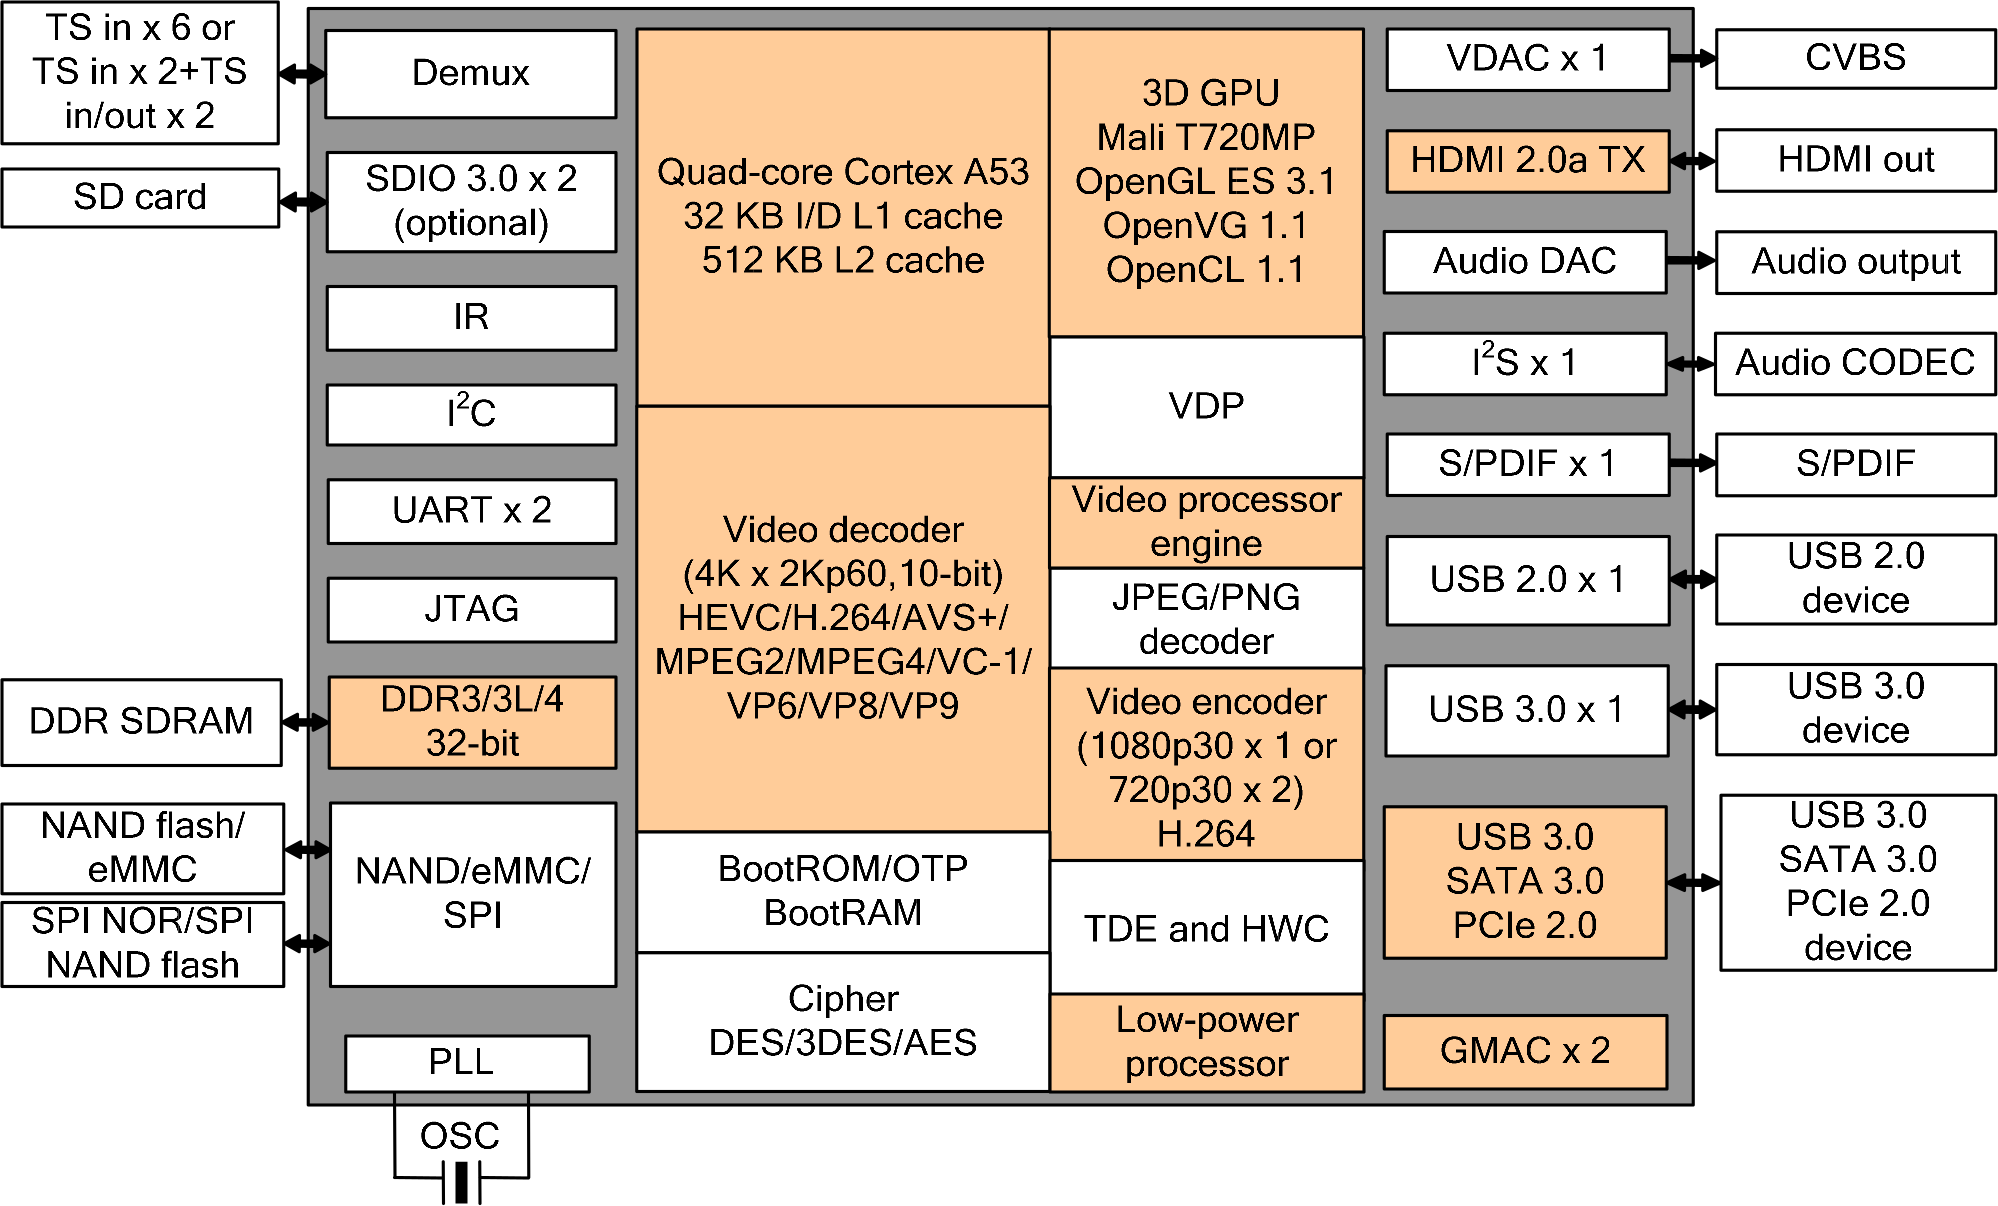 Hi3798C V200 Block Diagram - Click to Enlarge